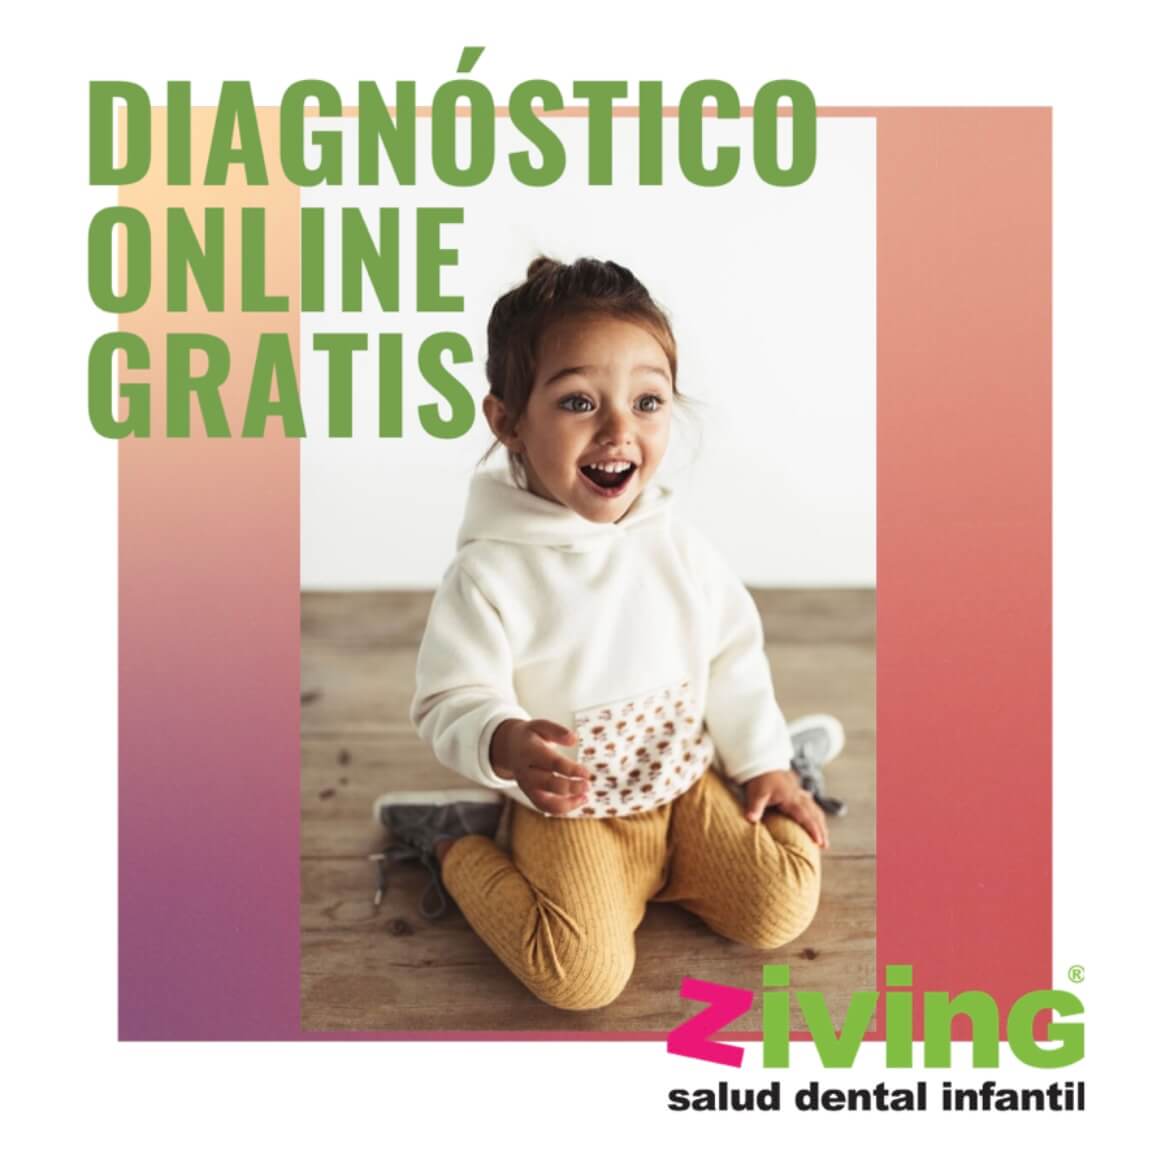 Diagnóstico online gratis